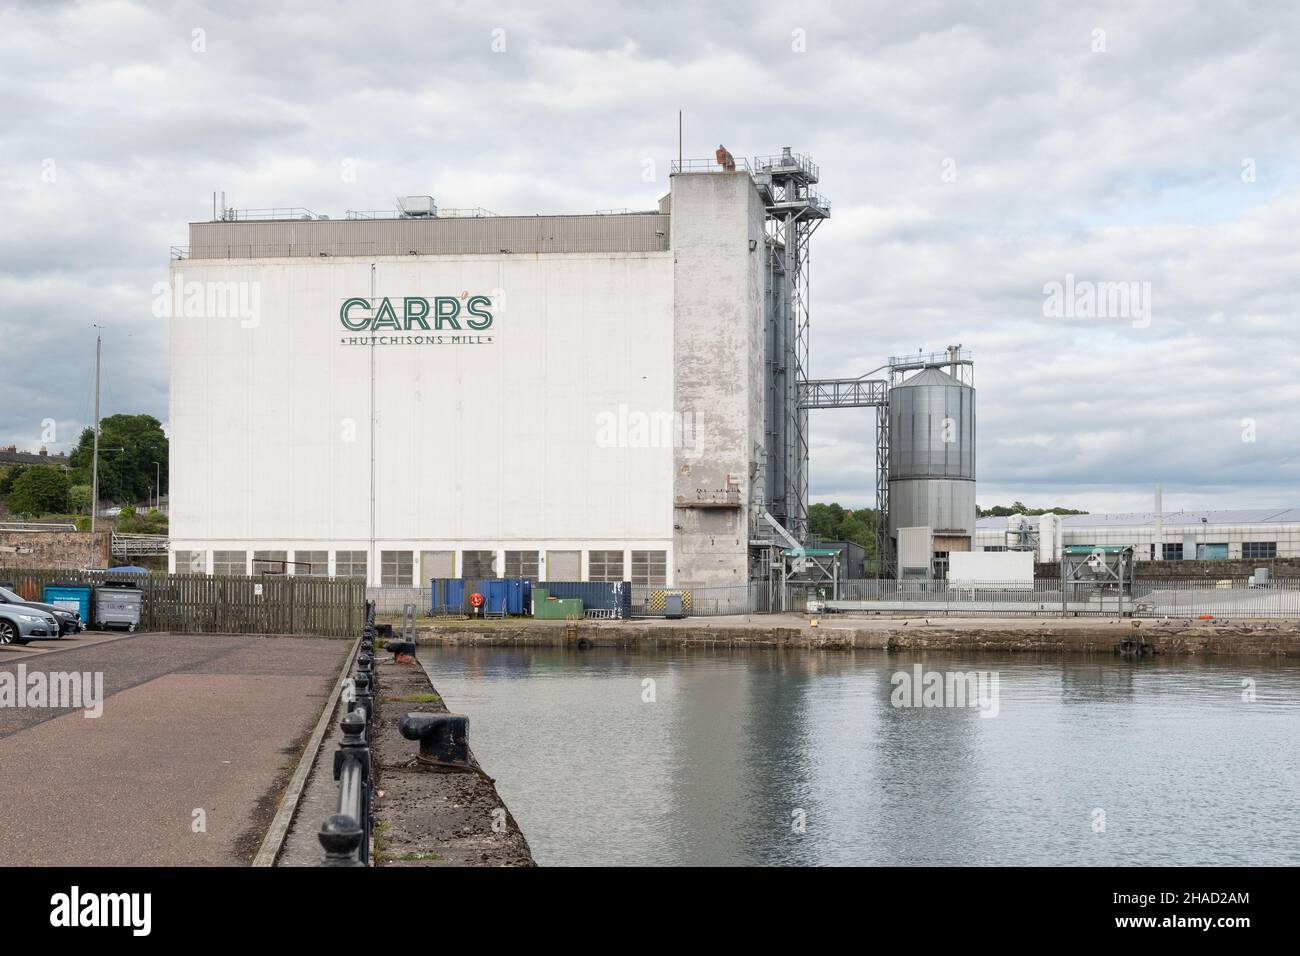 La Carrs Hutchisons mulino di farina, Kirkcaldy, Fife, Scozia, Regno Unito Foto Stock